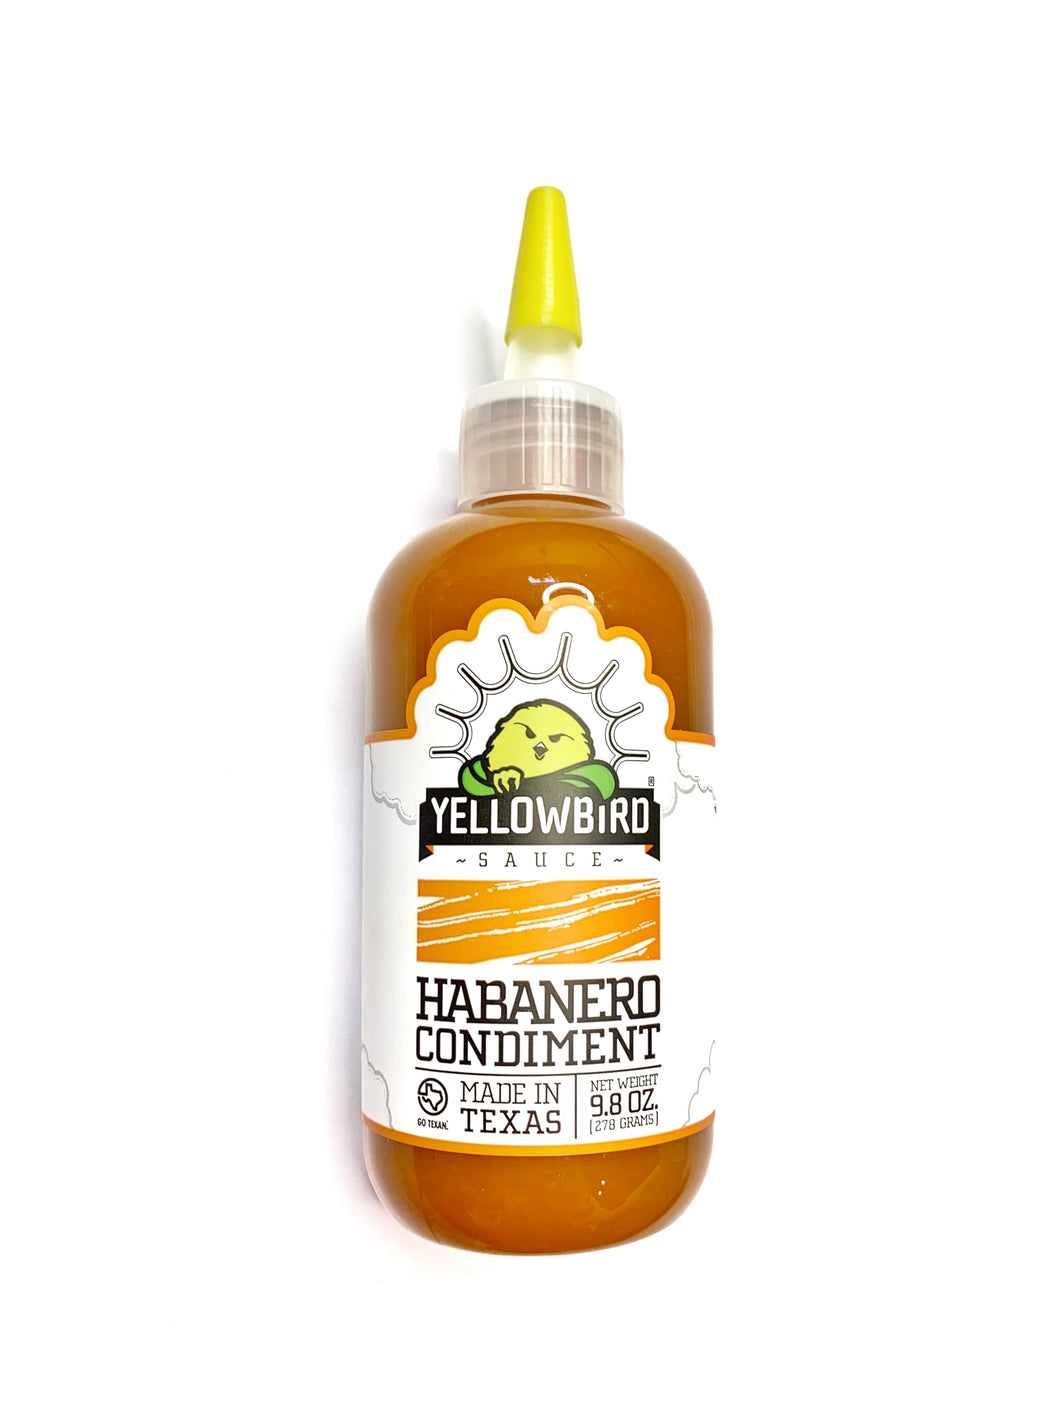 Yellowbird Habanero Condiment Hot Sauce